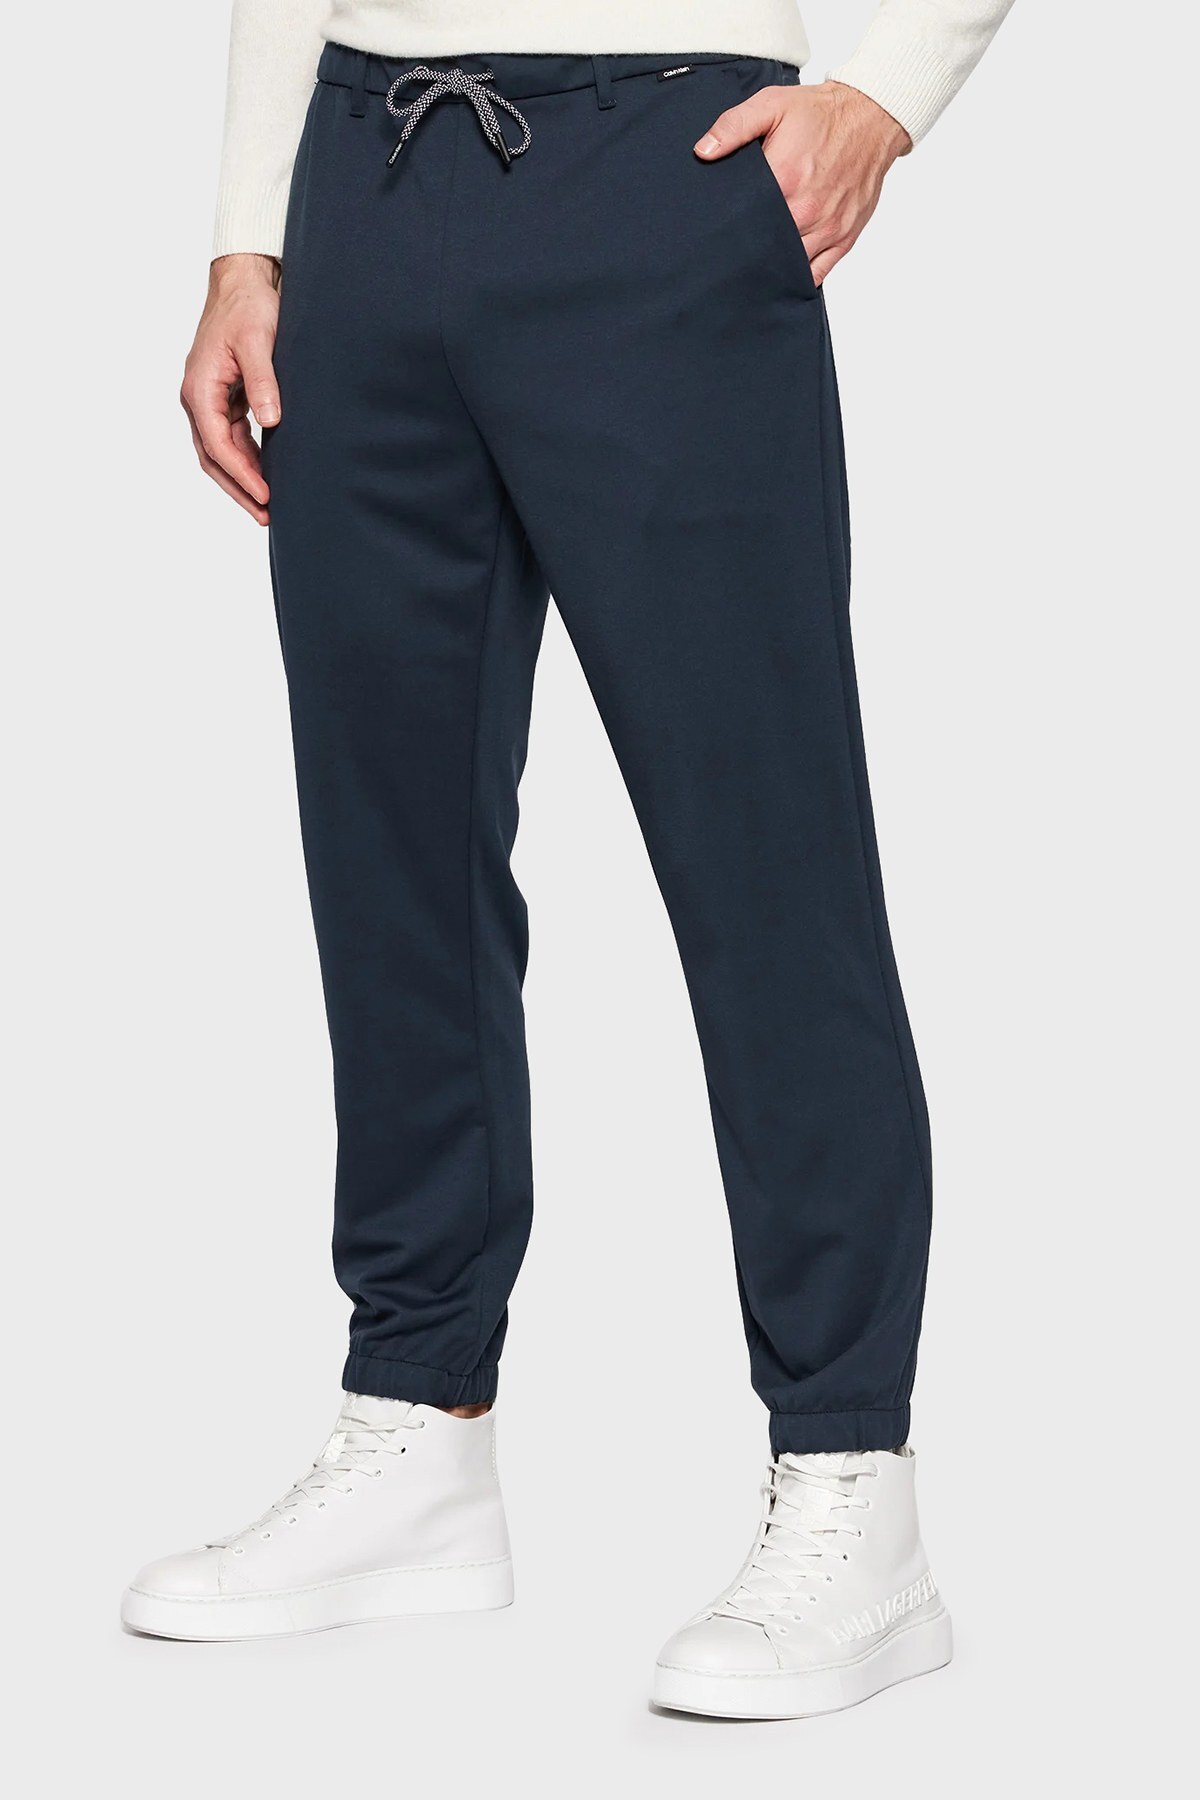 Calvin Klein Baskılı Regular Fit Belden Bağlamalı Jogger Erkek Pantolon K10K107498 DW4 LACİVERT